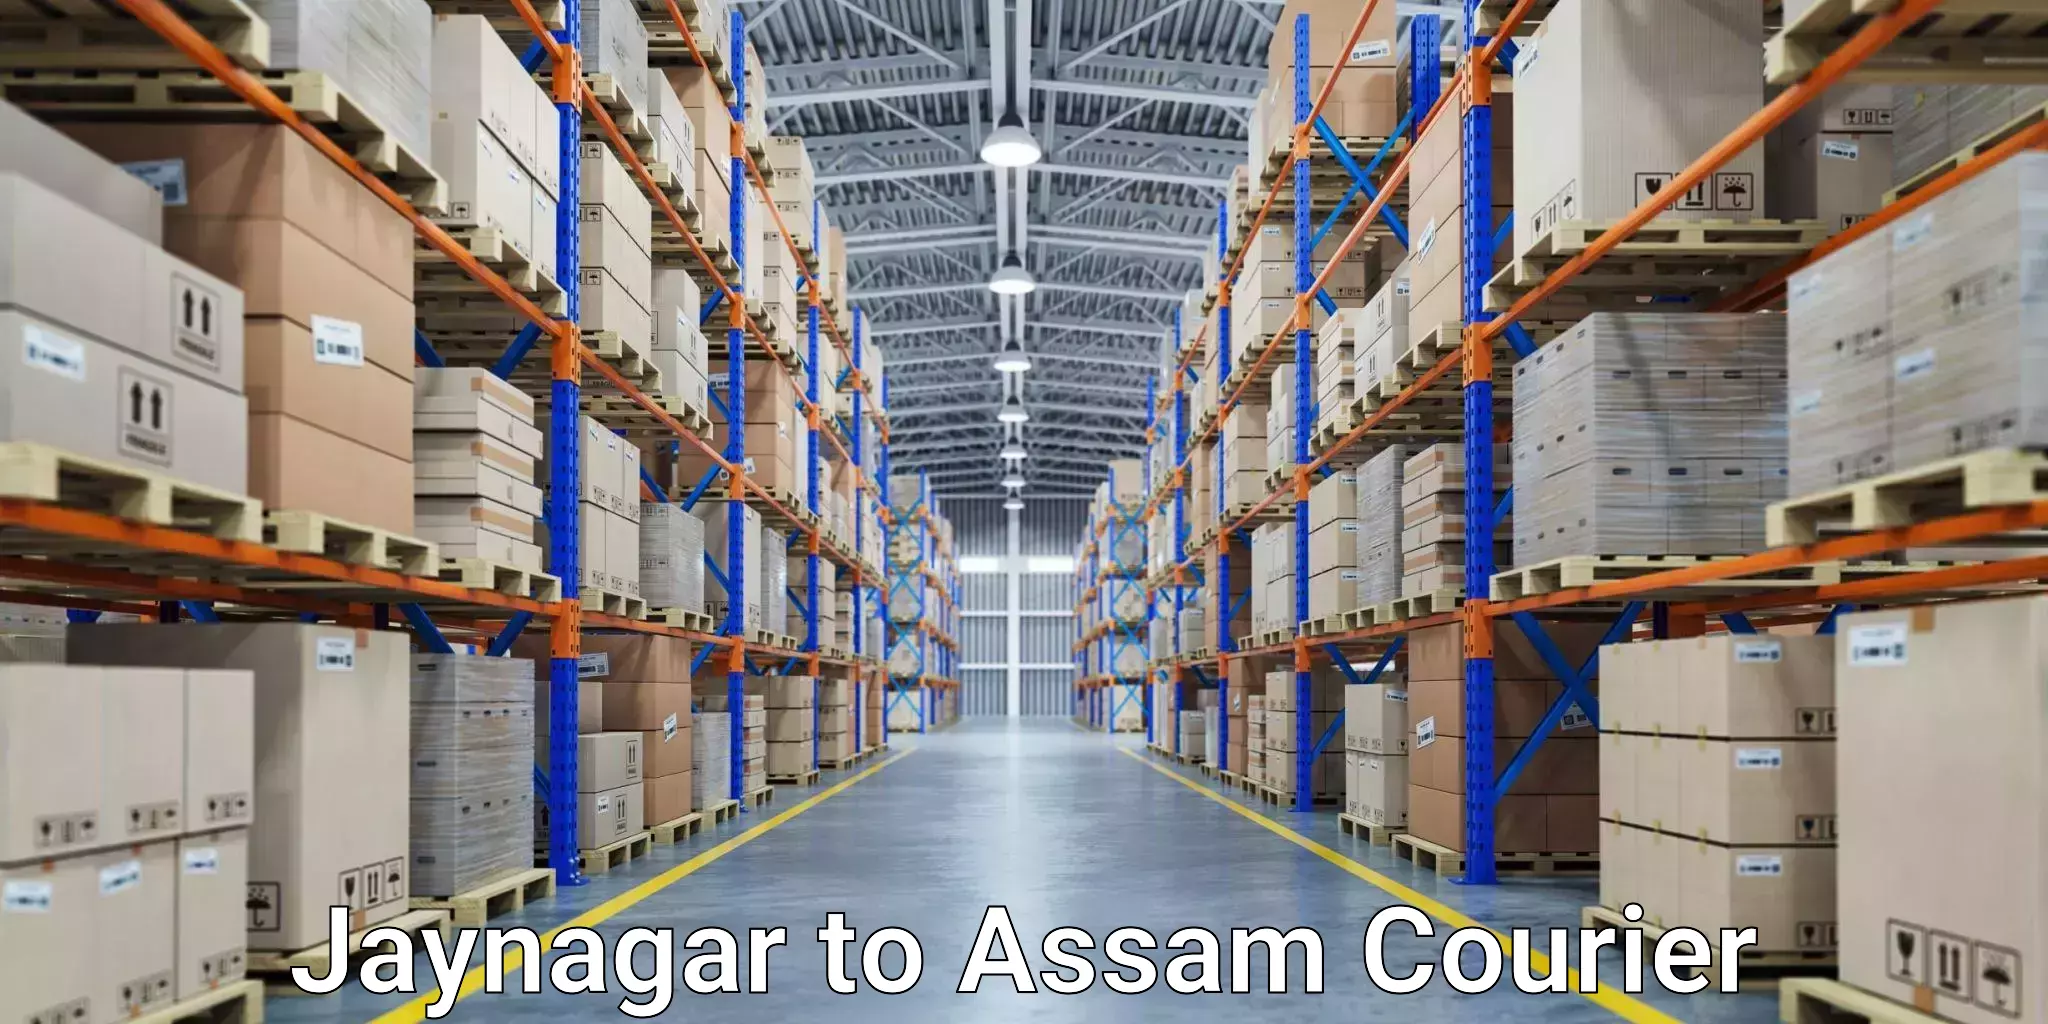 High-capacity shipping options Jaynagar to Rangia